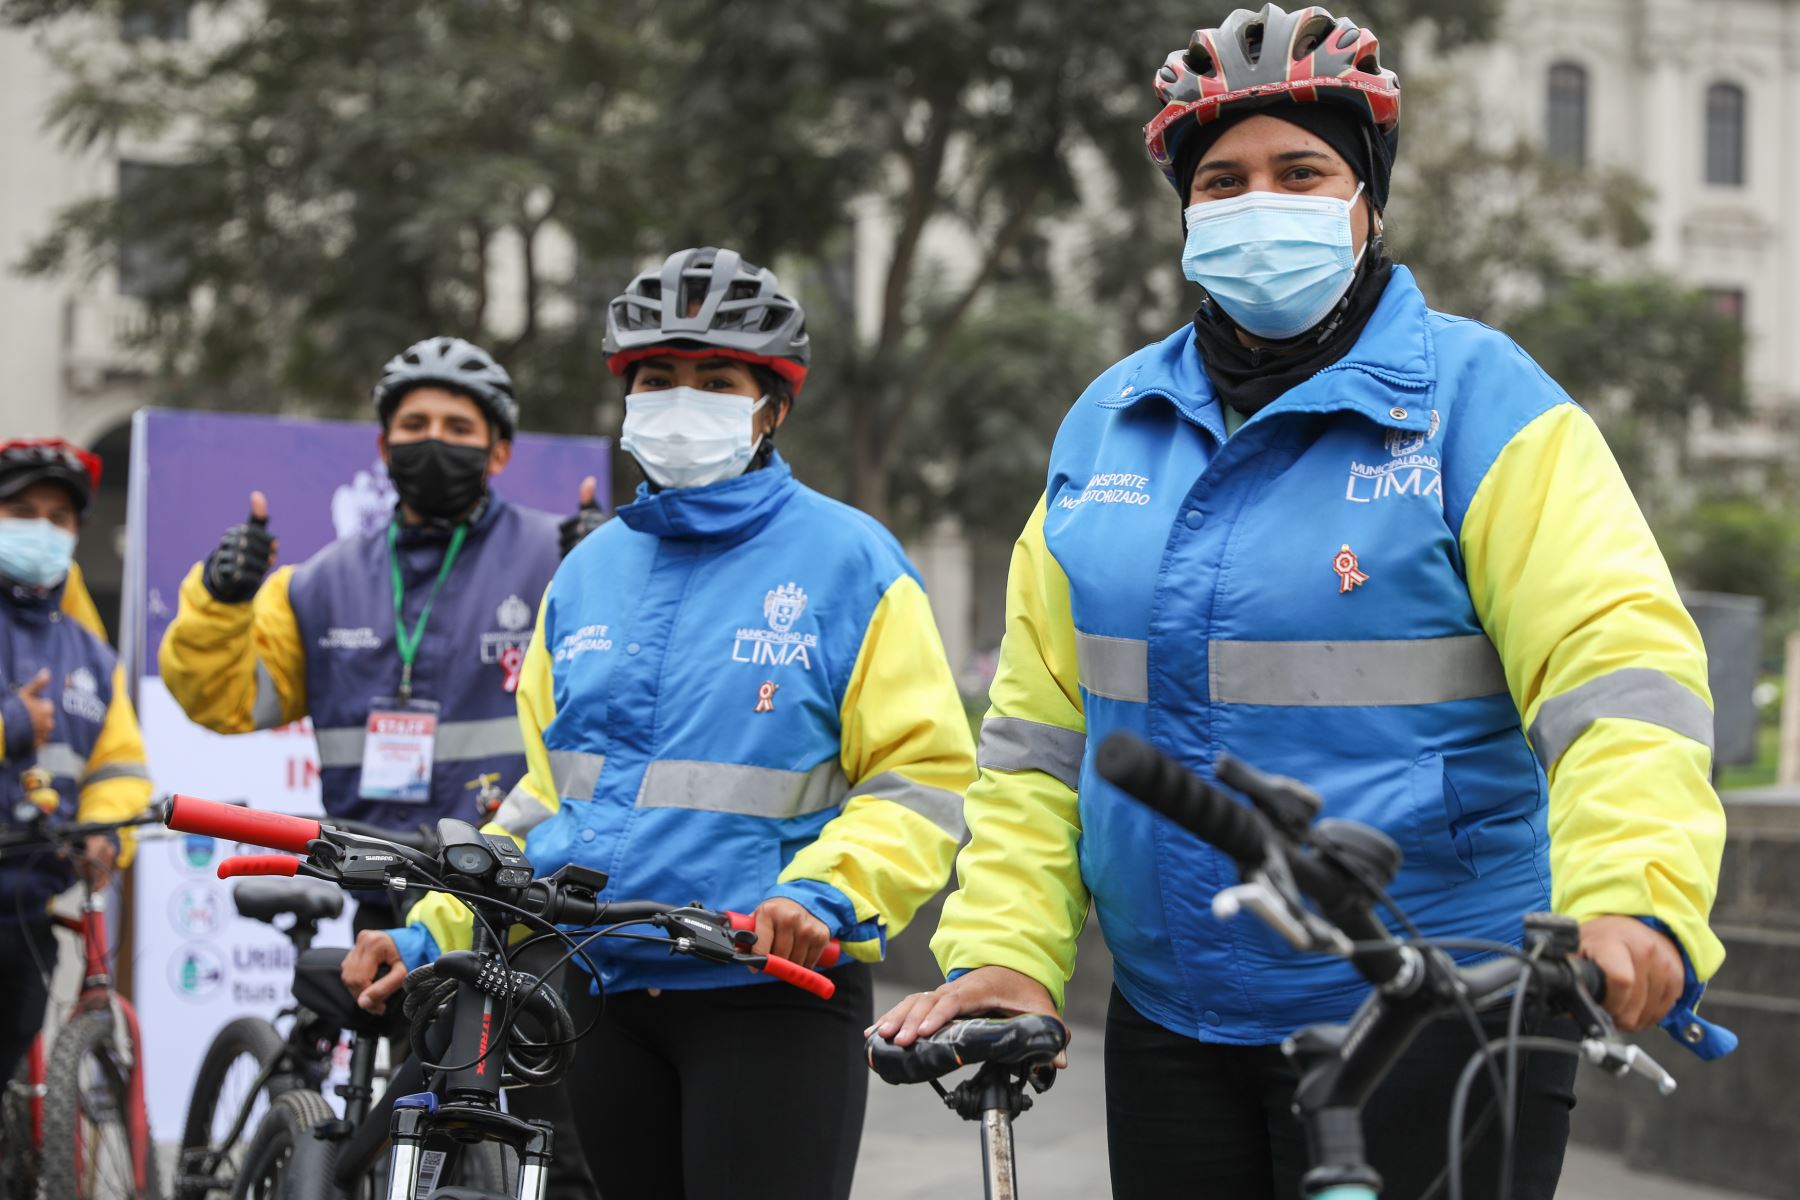 Municipalidad de Lima organiza bicicleteada "Pedaleando por el Bicentenario del Perú”. Esta actividad se realiza en simultáneo en varias ciudades del país e incluye un recorrido ciclístico de 25 km en cada lugar. Foto: ANDINA/Municipalidad de Lima